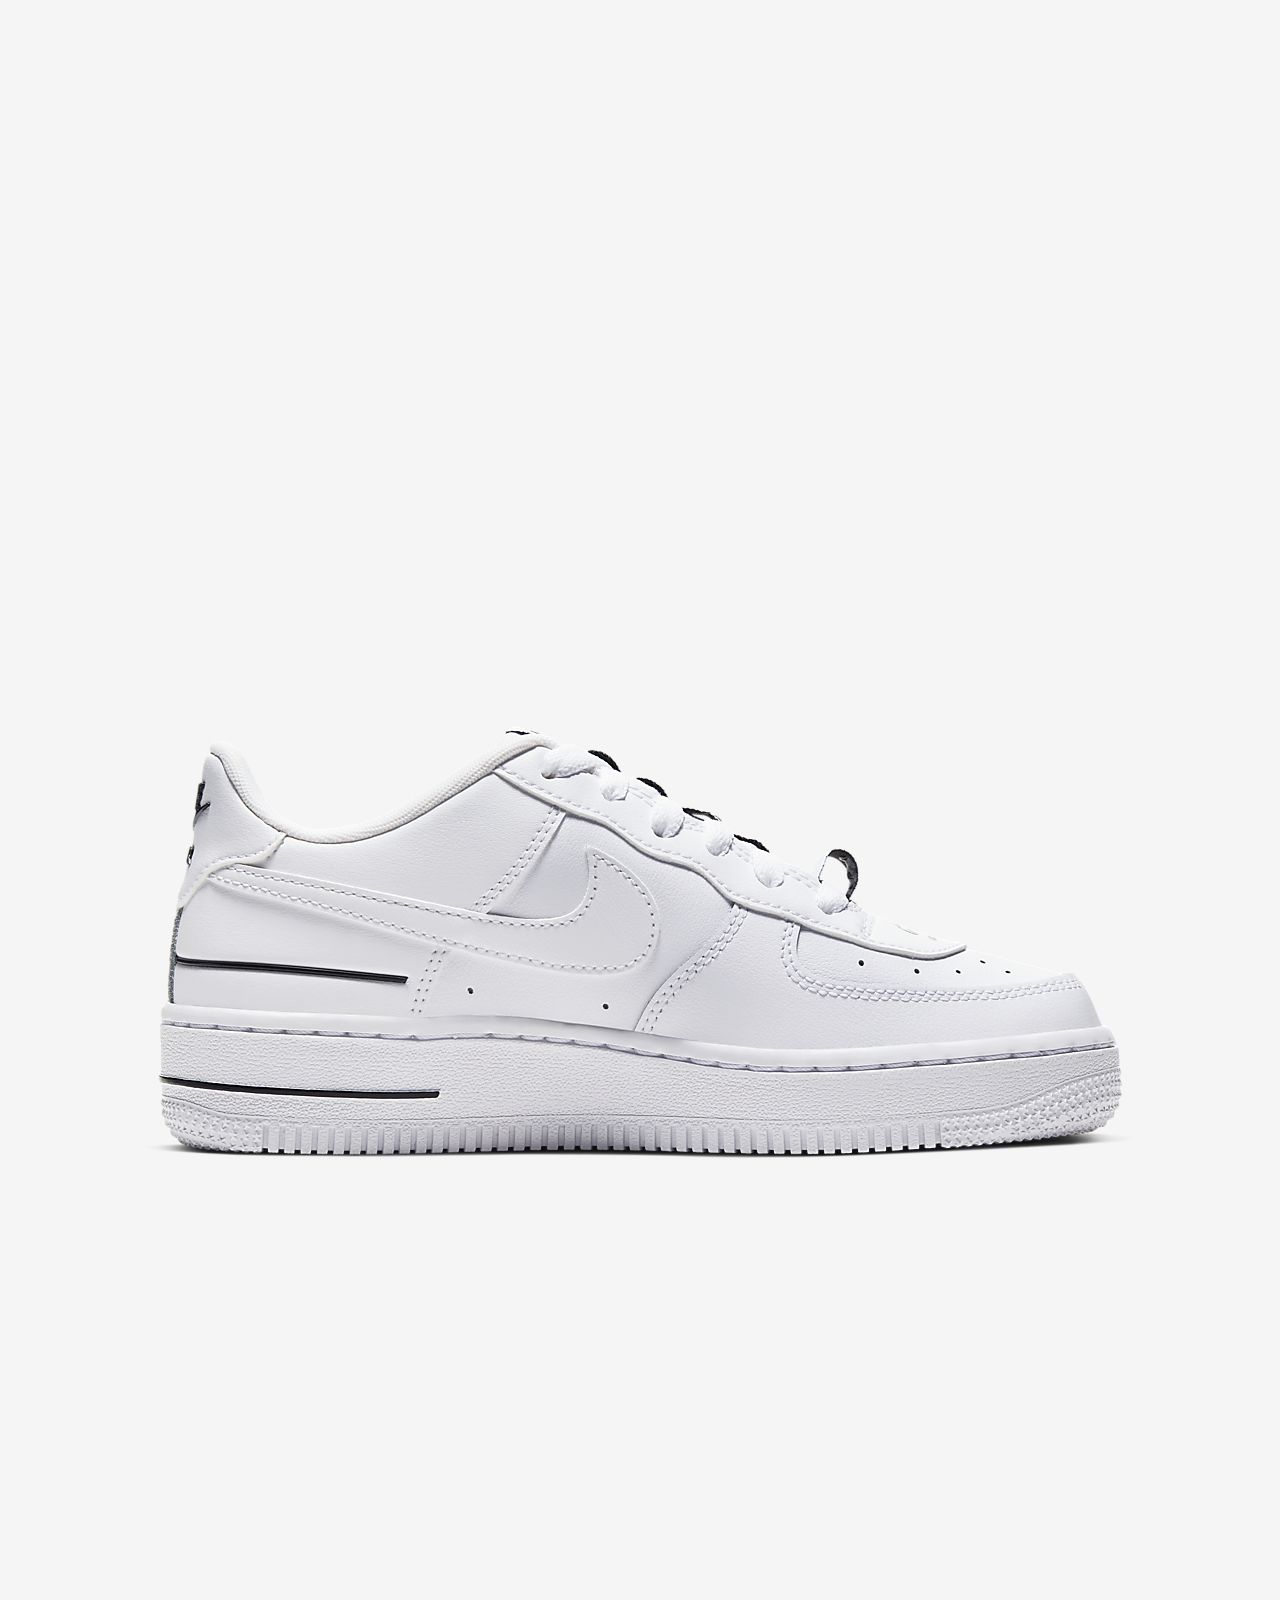 nike air force 1 lv8 tennis shoes cheap 